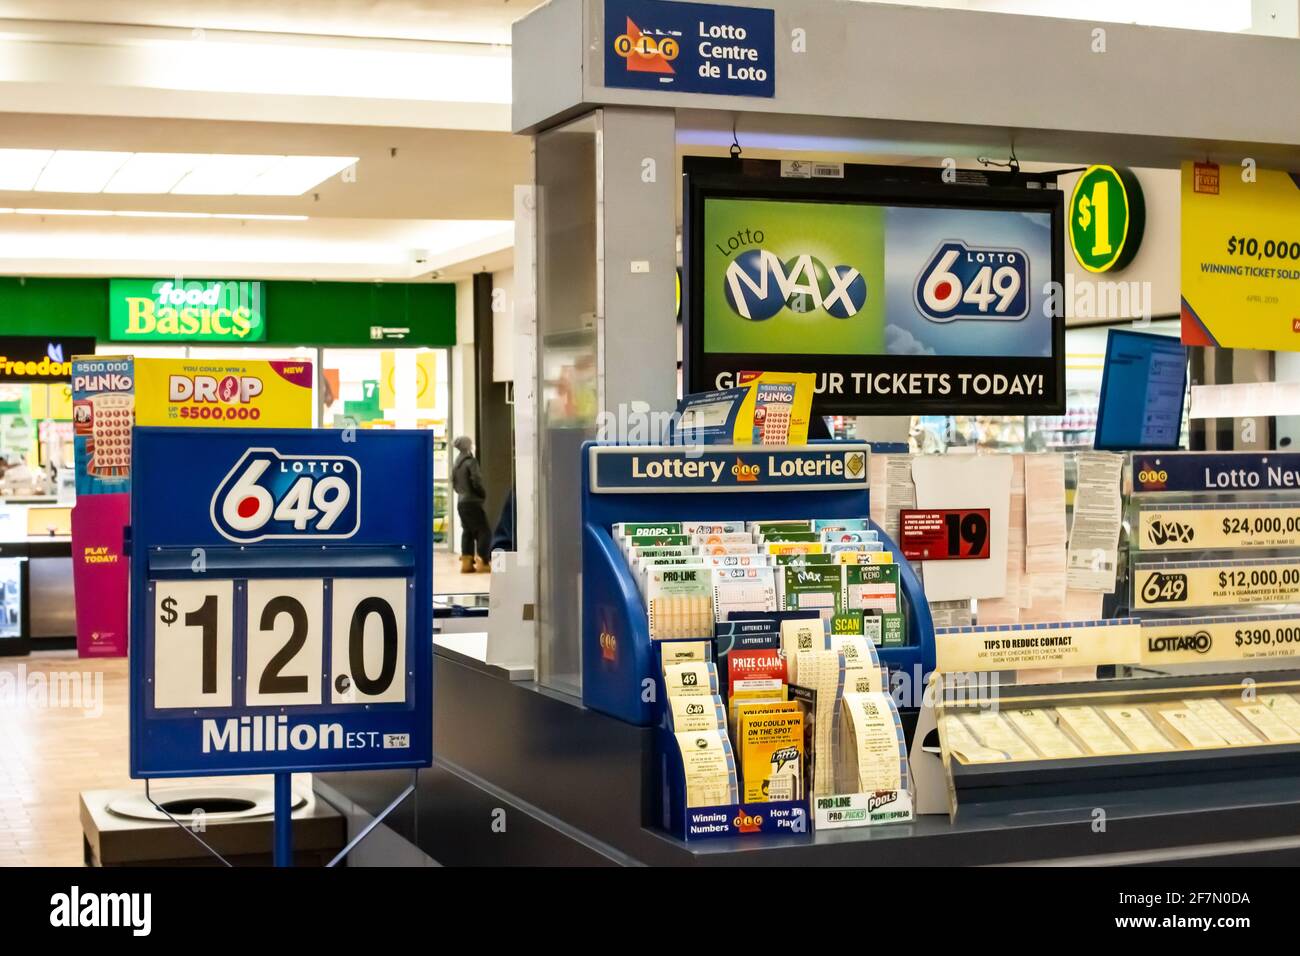 Londra, Ontario, Canada - Febbraio 26 2021: Una biglietteria lotto 649 nel centro commerciale Sherwood Forest afferma che il jackpot è valutato a 12 milioni di dollari. Foto Stock